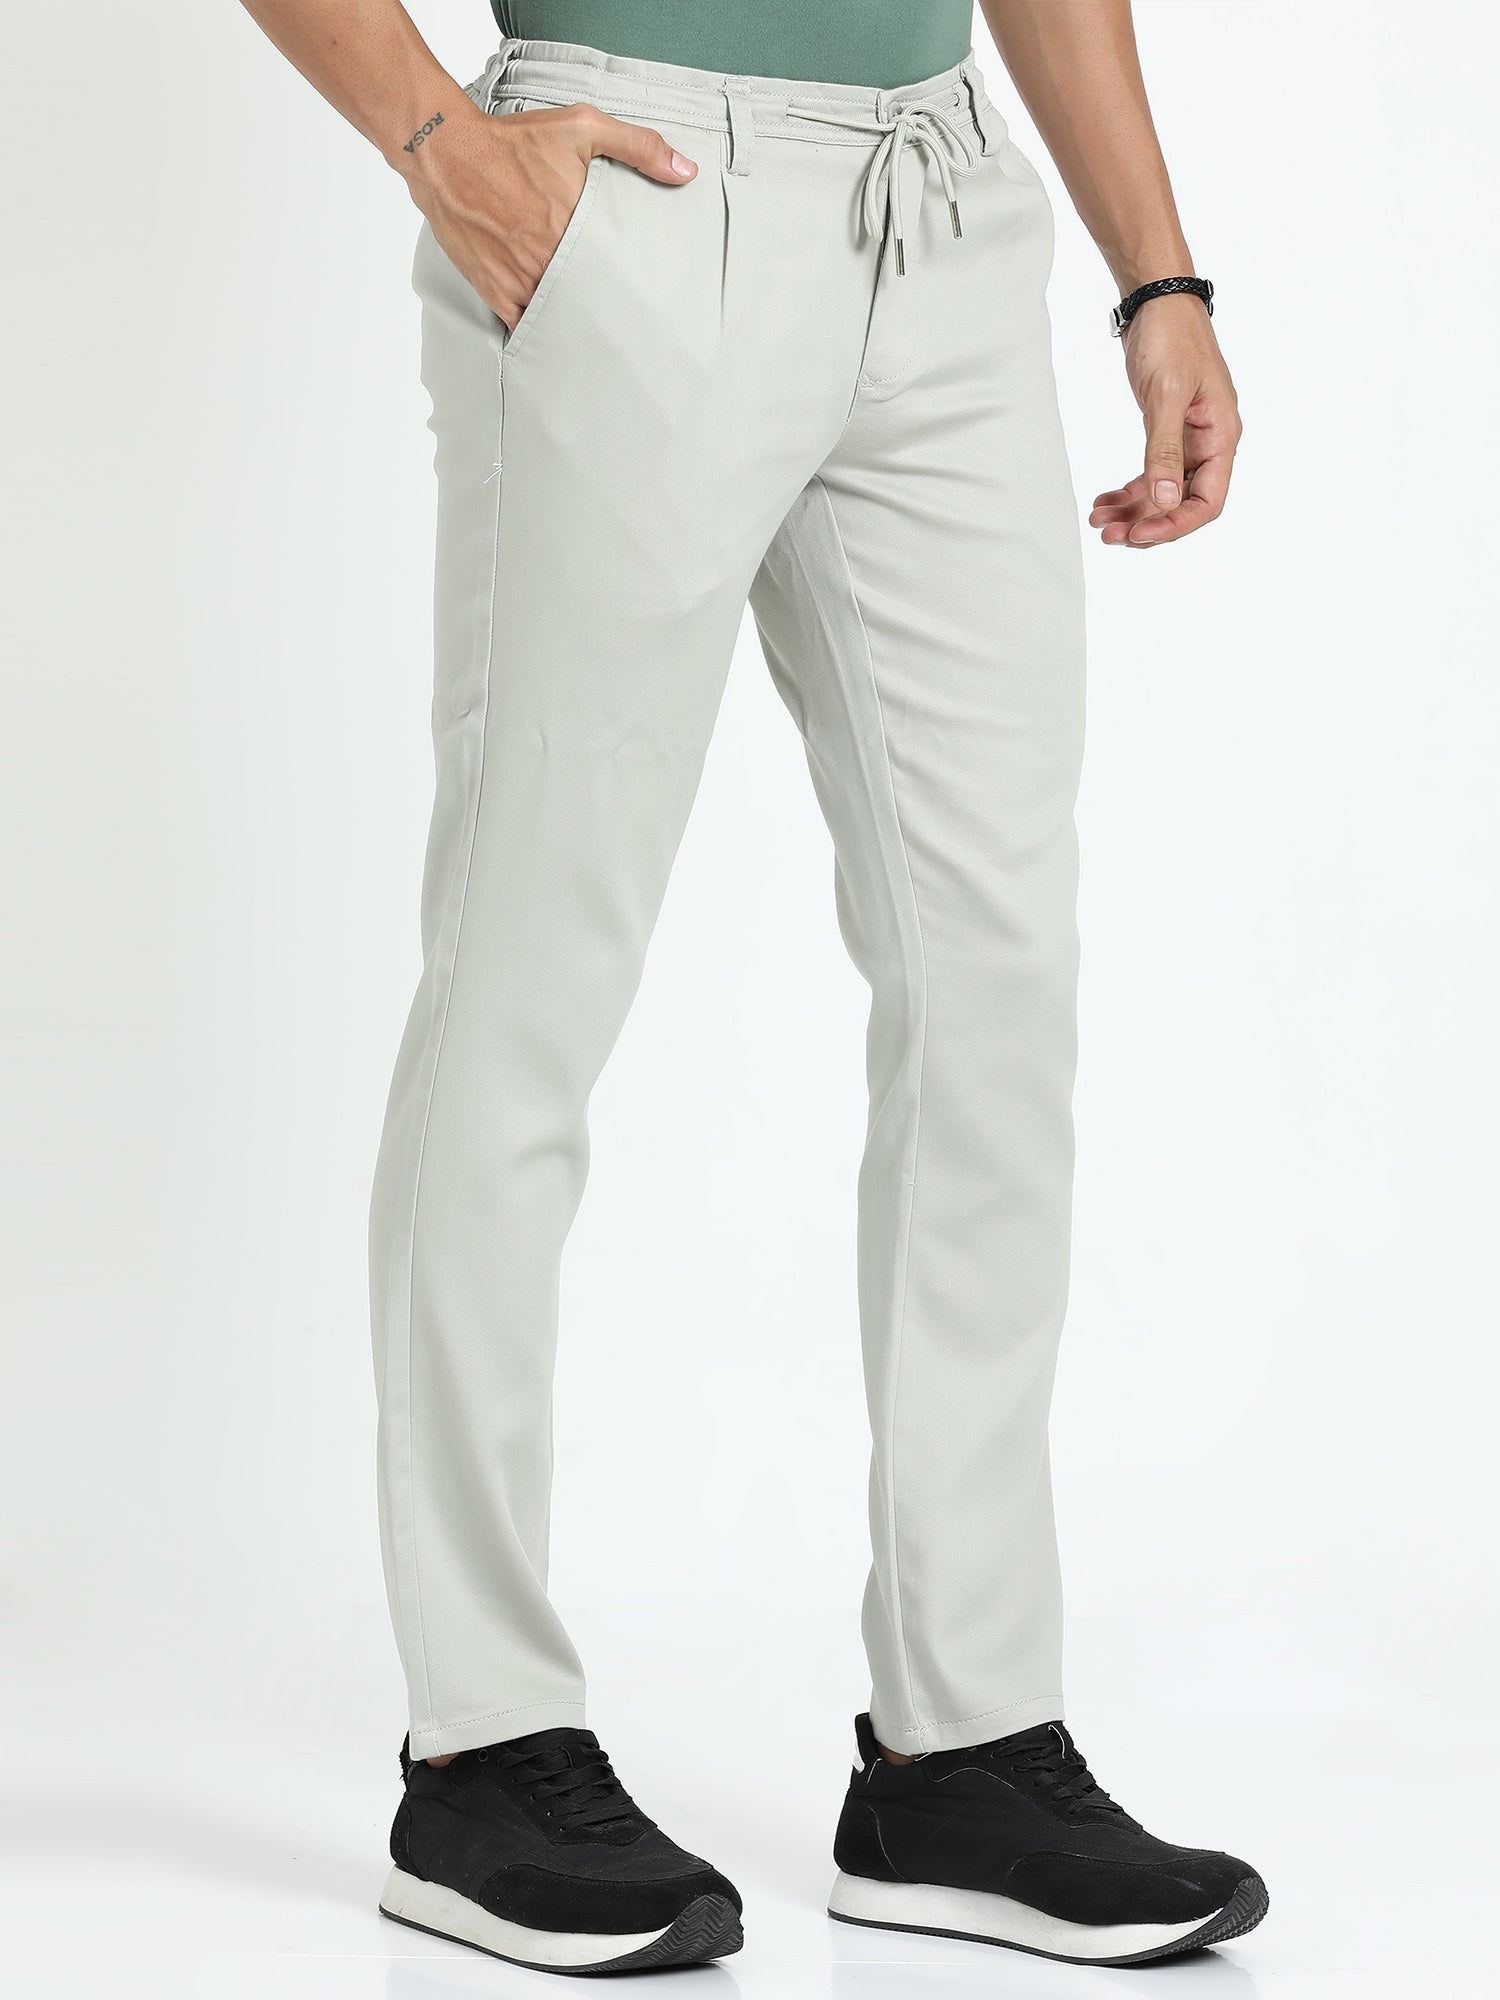 Pastel Grey Lounge Pant for Men 